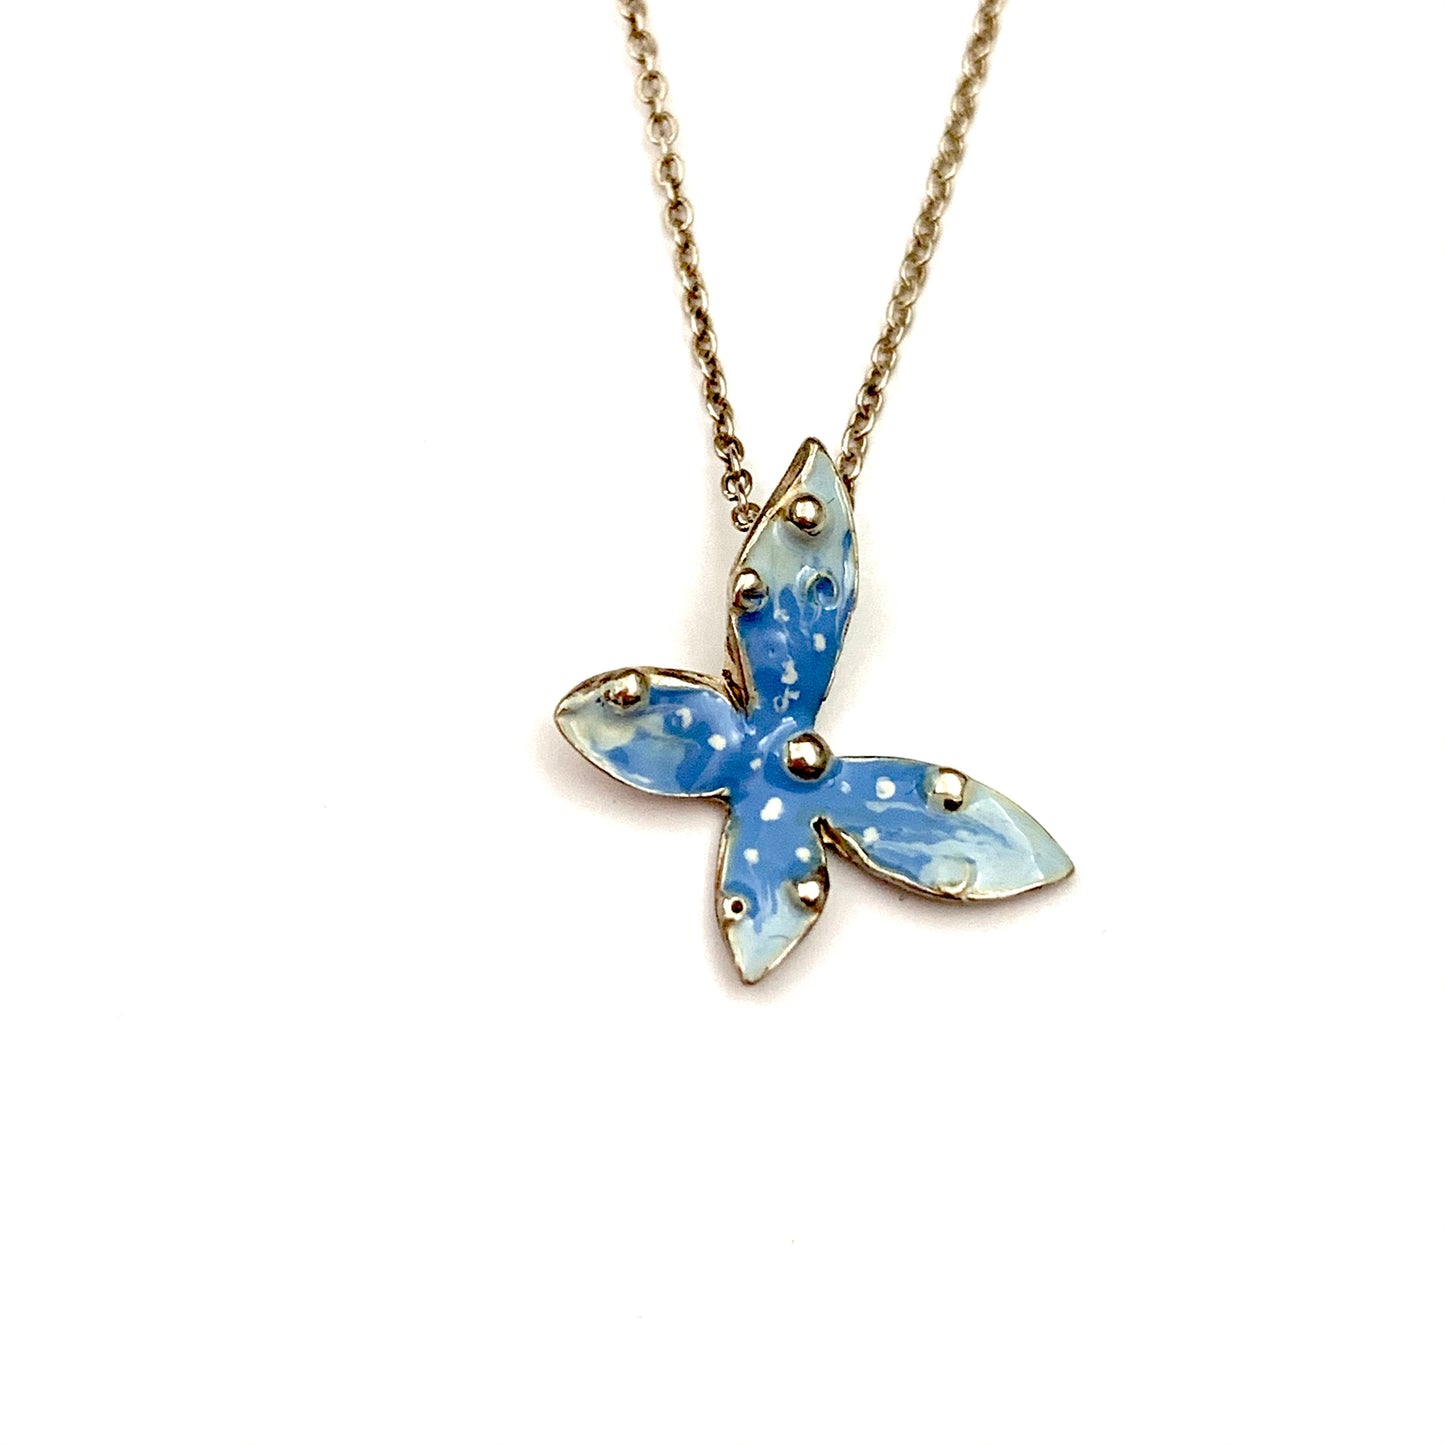 Collana in argento con farfalla smaltata a mano con sfumature azzurre.  Lunghezza catena regolabile da 38 a 47 cm.  Dimensioni farfalla 1 cm.  Spedizione gratuita con confezione regalo.